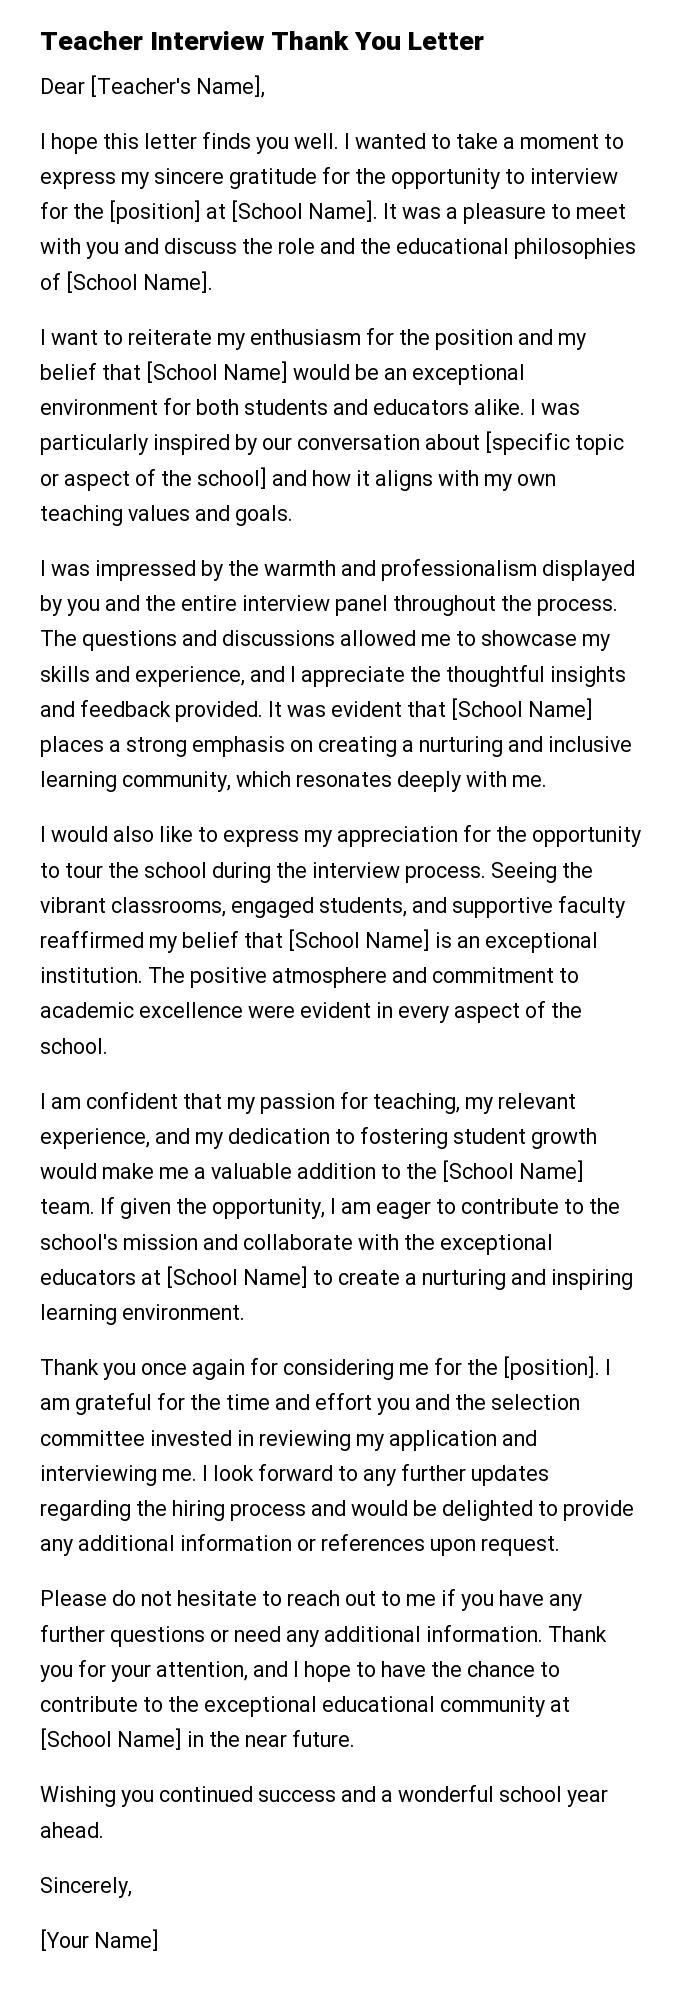 Teacher Interview Thank You Letter